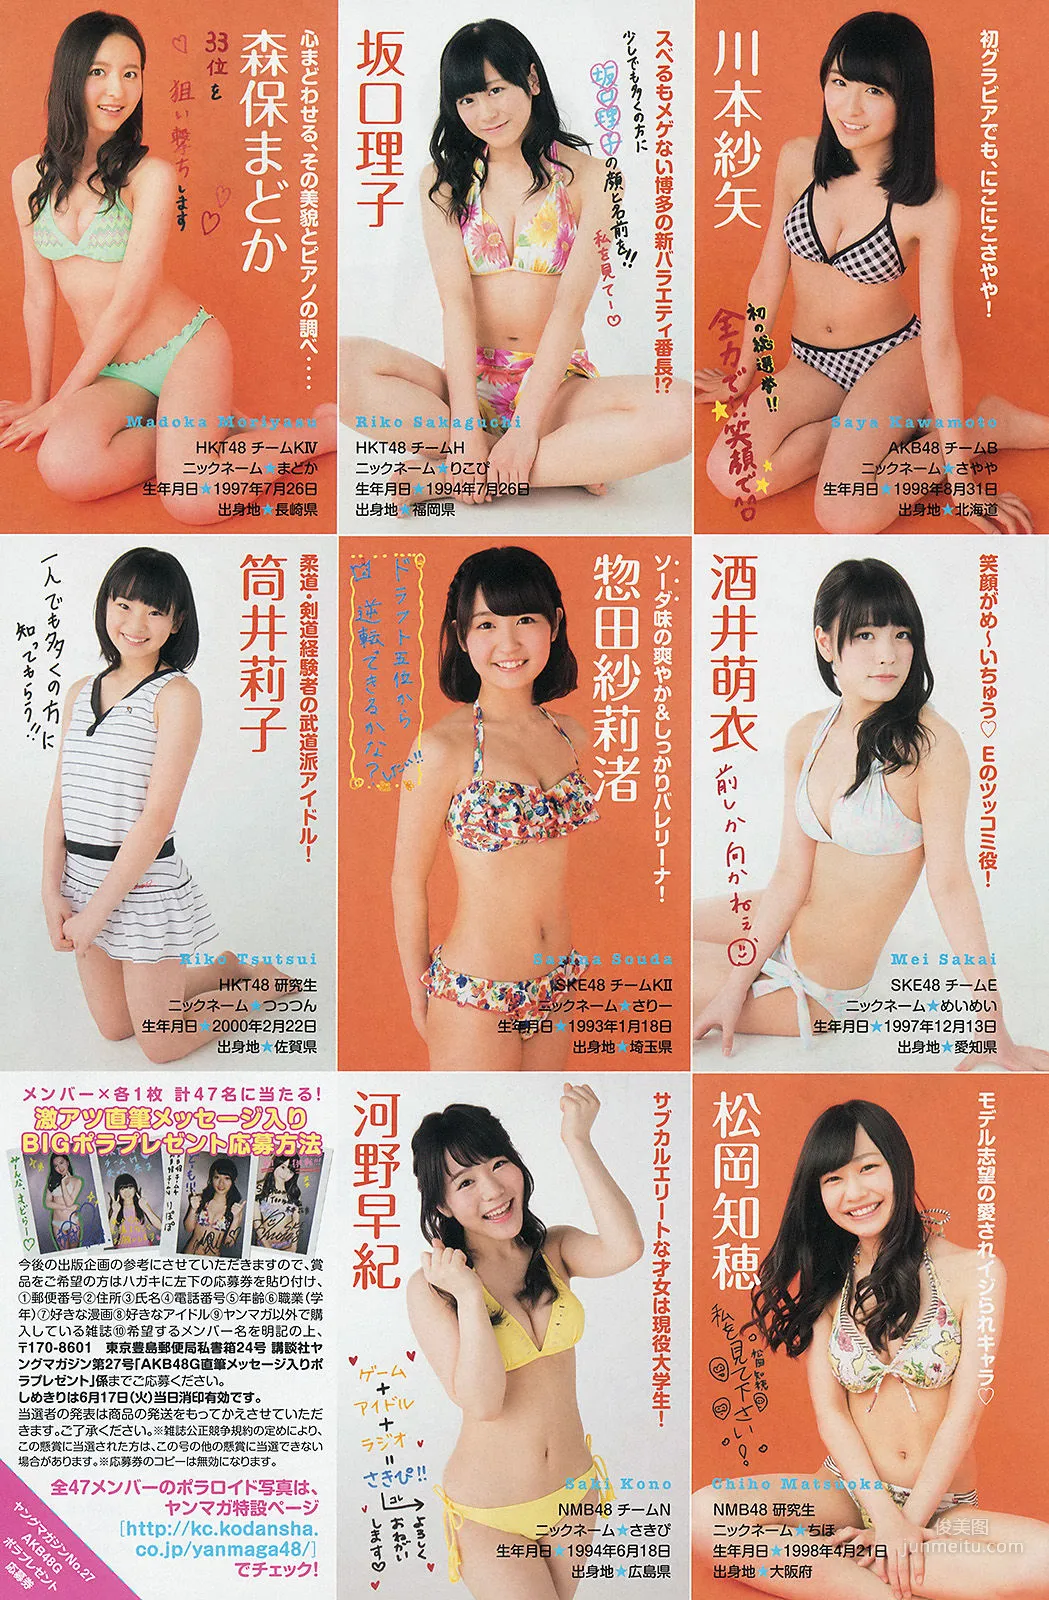 [Young Magazine] 渡辺麻友 川栄李奈 2401年No.27 写真杂志11